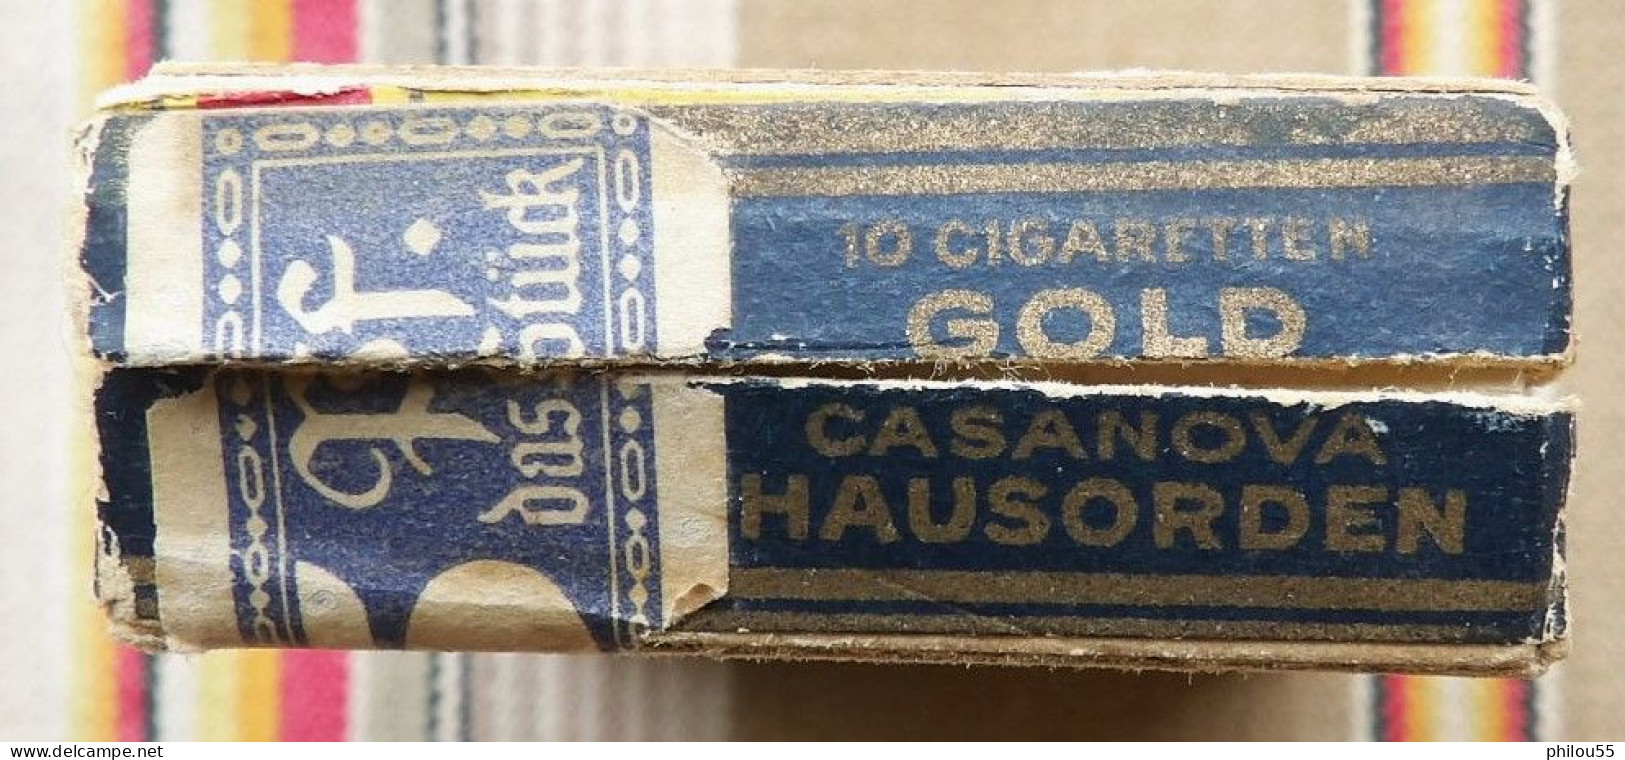 COLLECTION Boite Vide 10 Cigarettes CASANOVA HAUSORDEN GOLD - Estuches Para Cigarrillos (vacios)